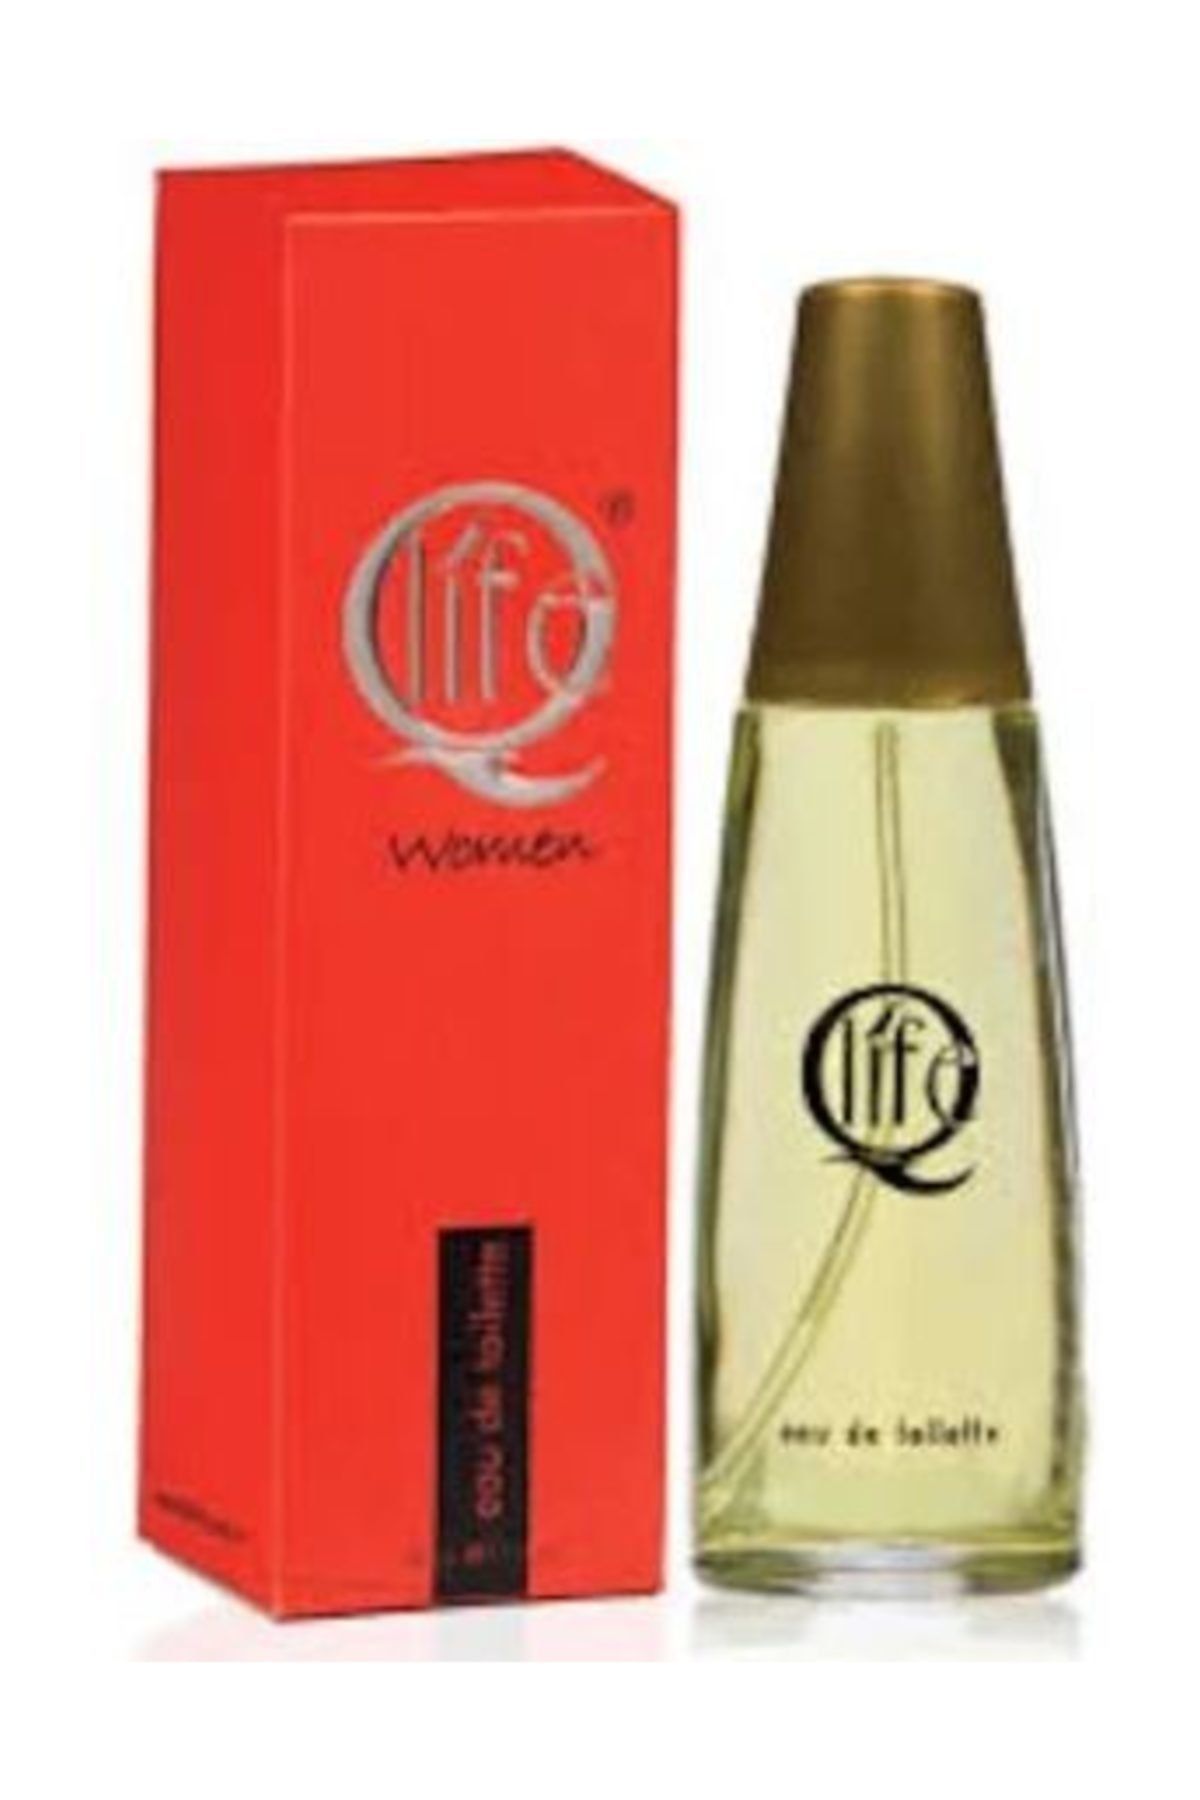 Q LİFE Kadın Parfüm Edt No:193 50 ml. Unisex